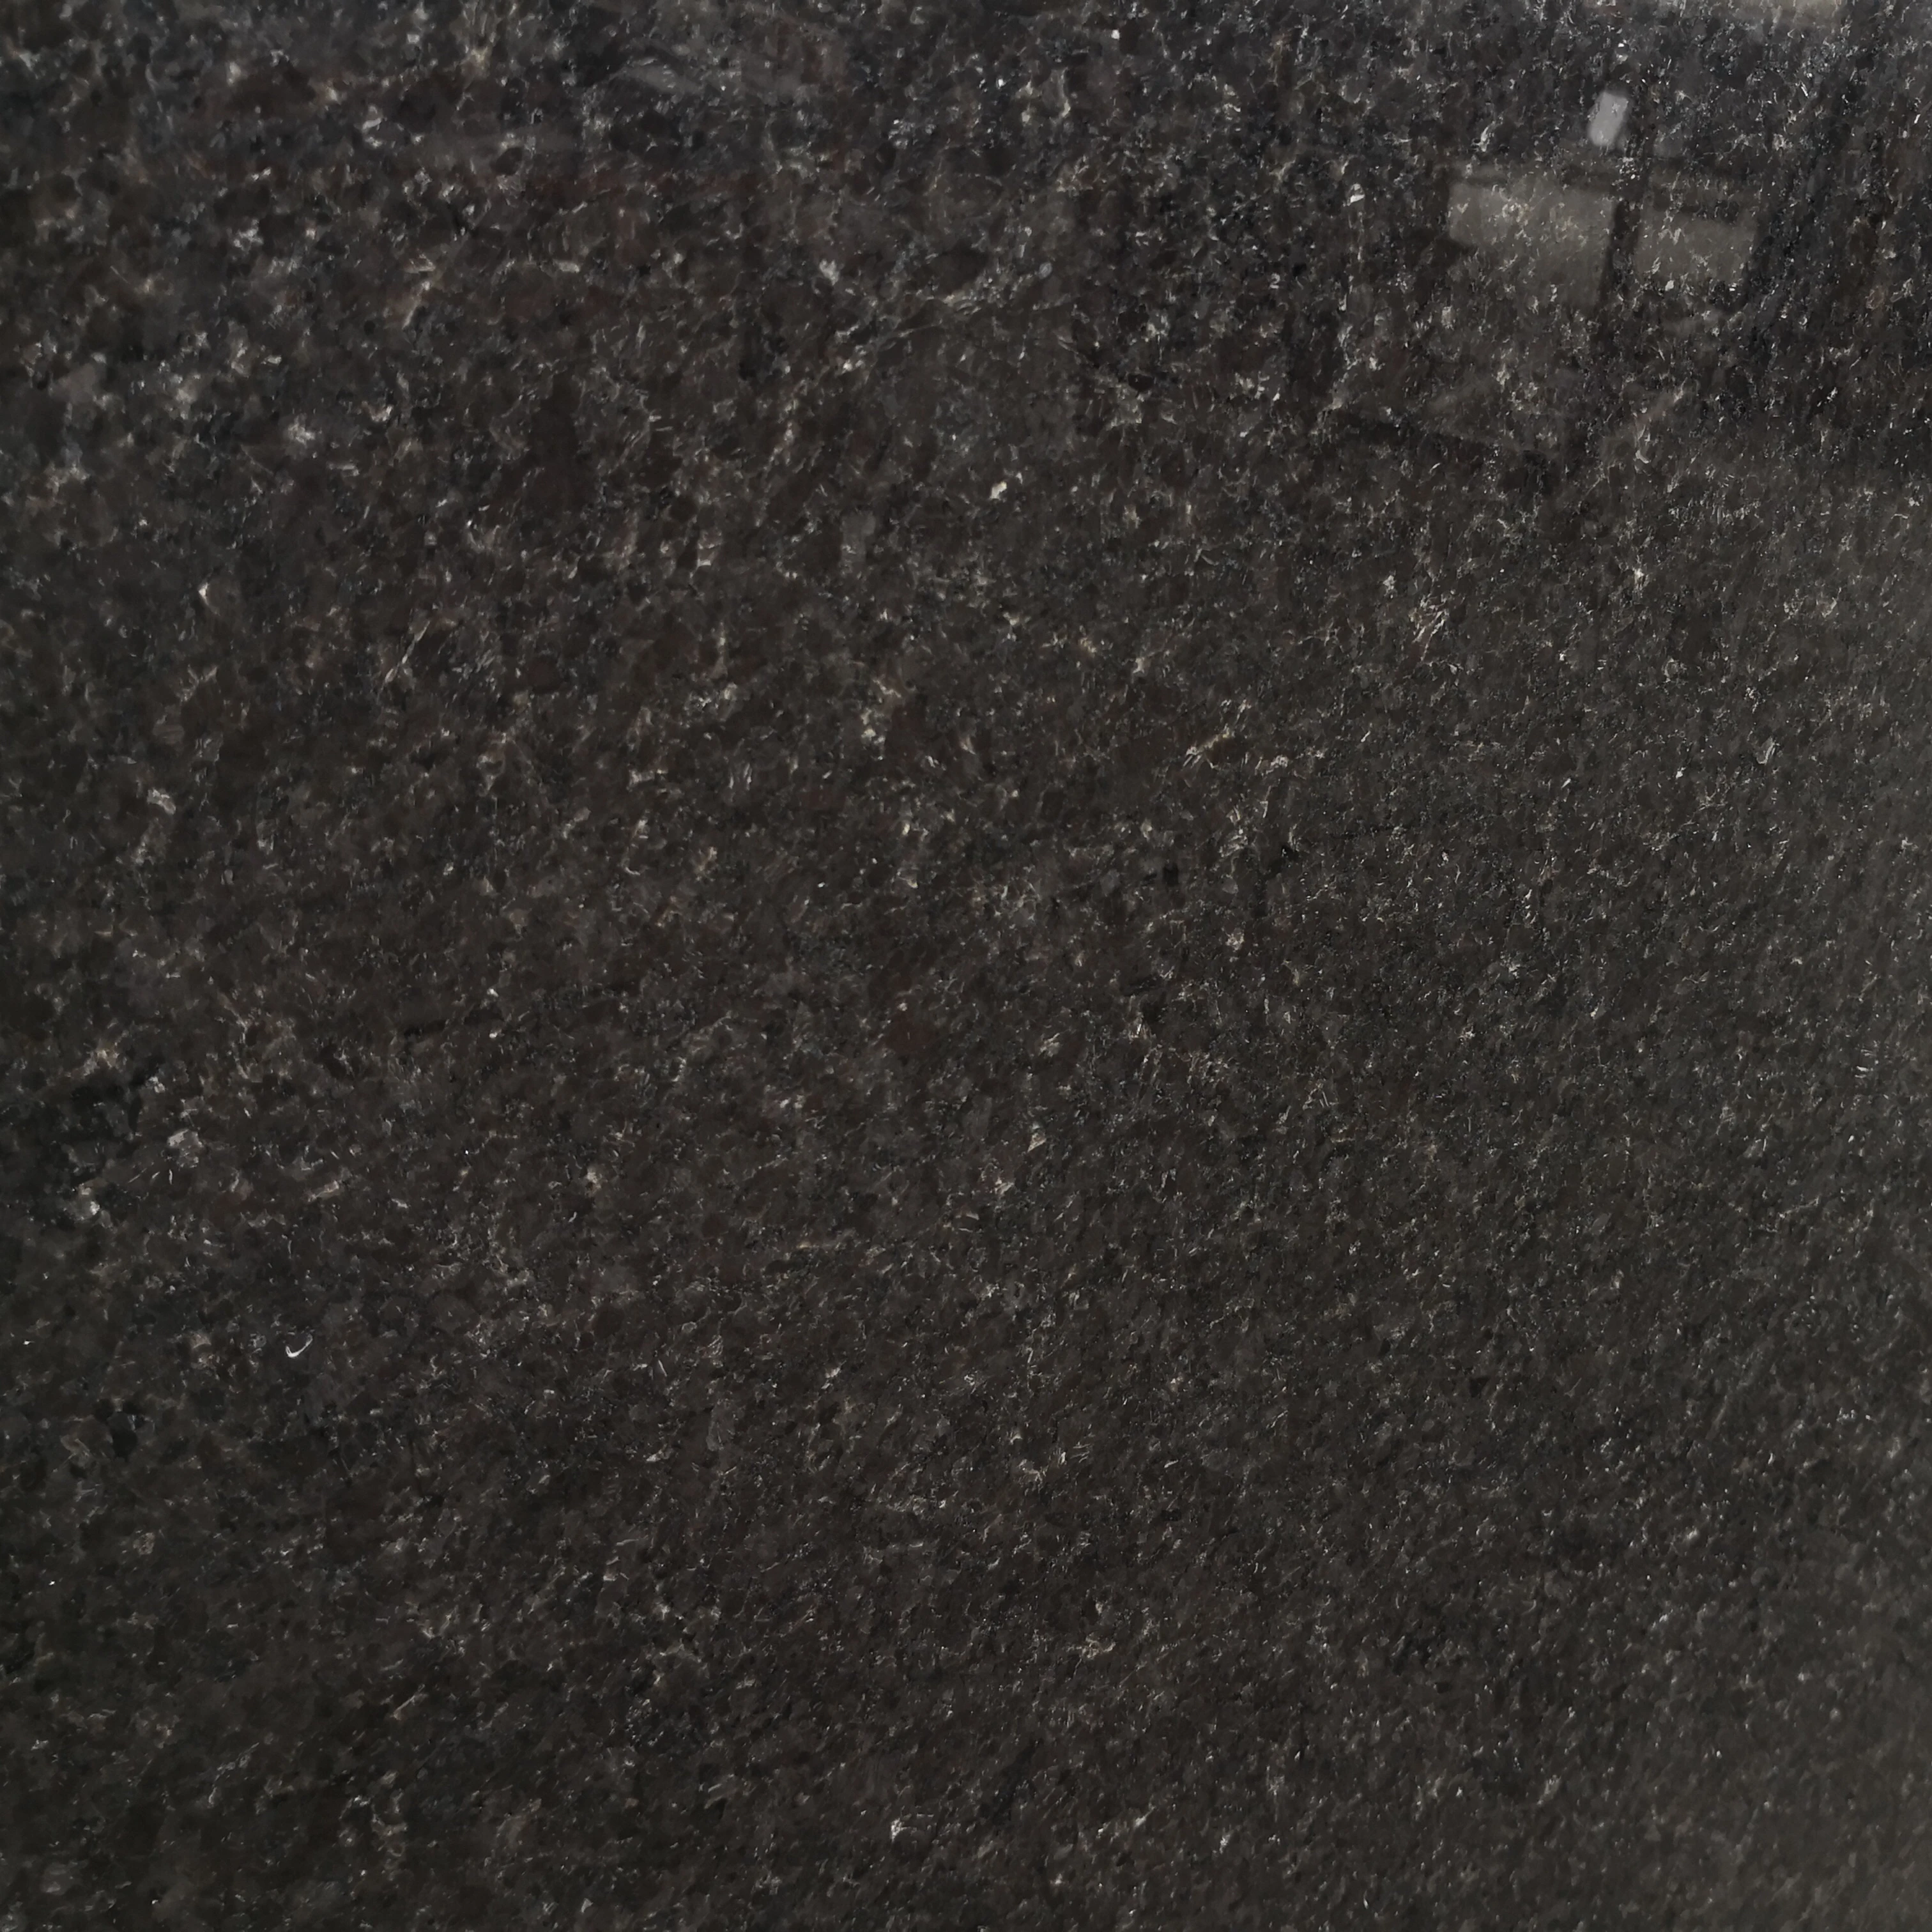 Solid Black Granite Countertop Kitchen Countertop Buy Granite